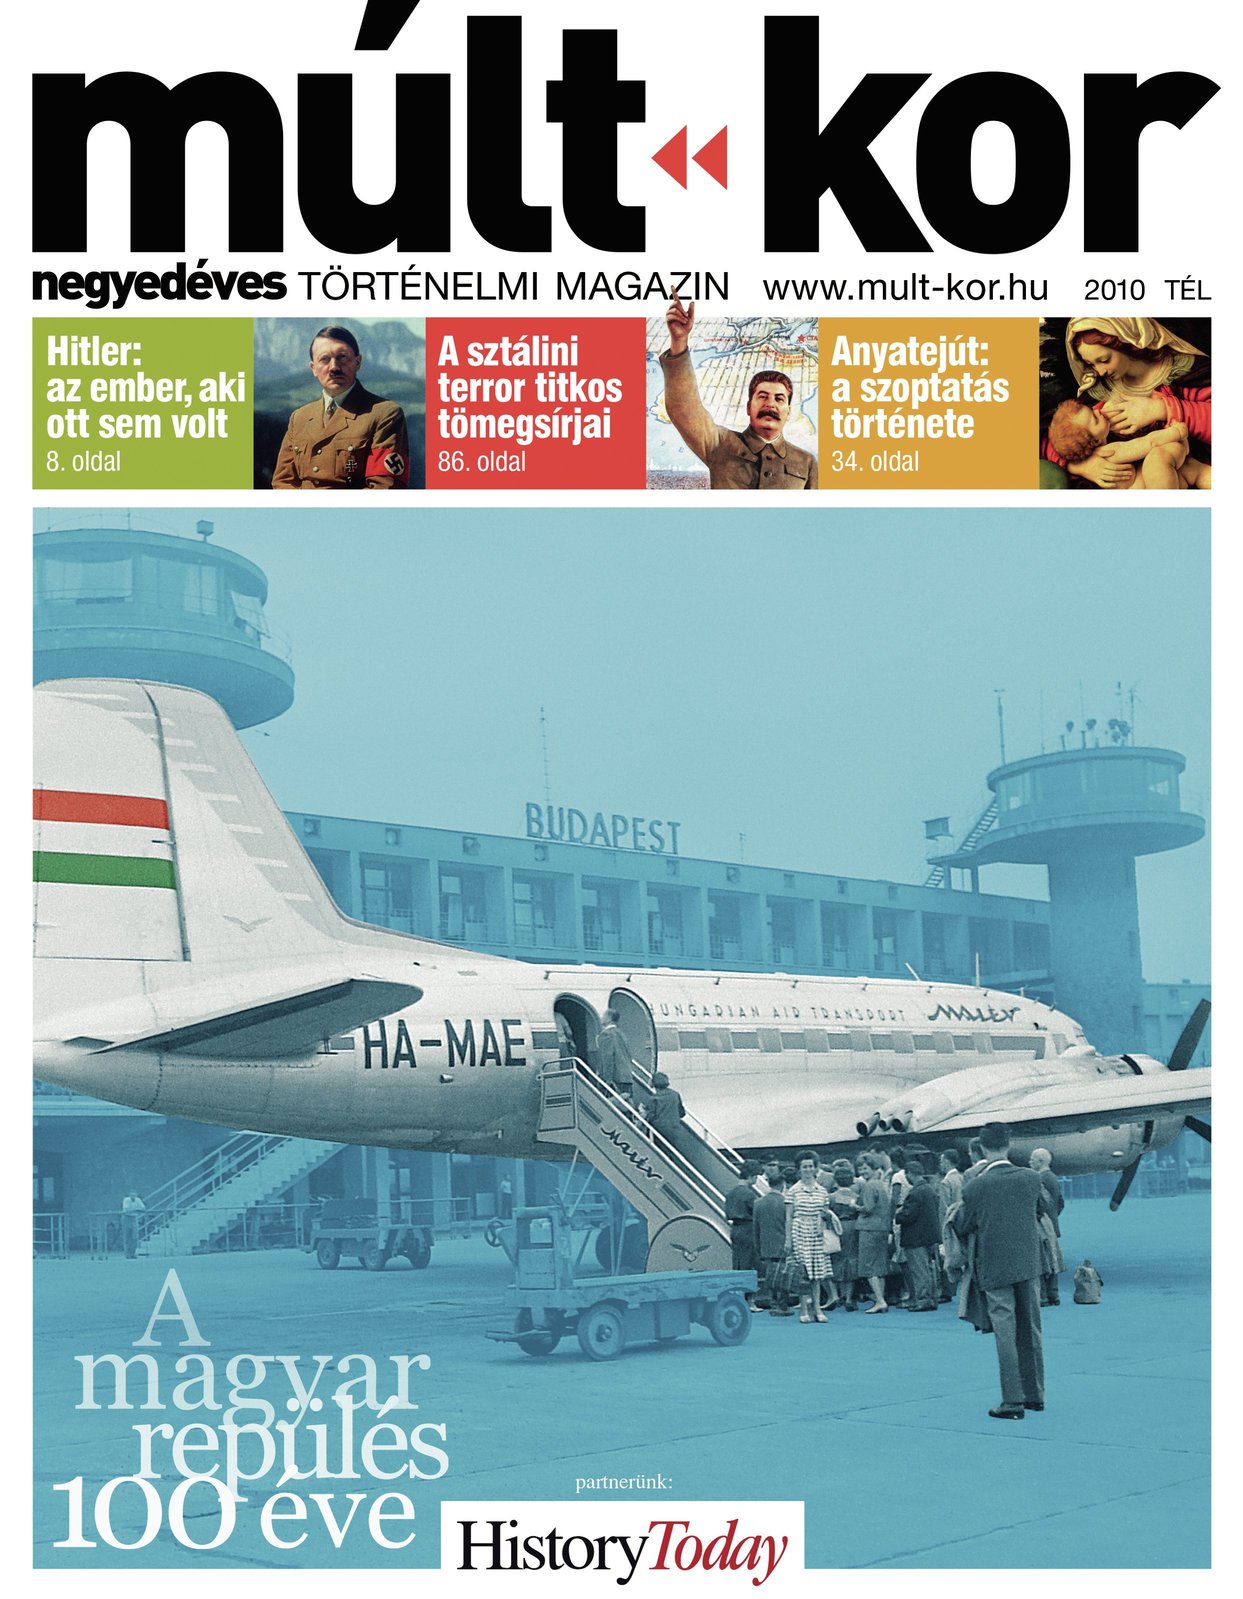 2010. tél: A magyar repülés 100 éve